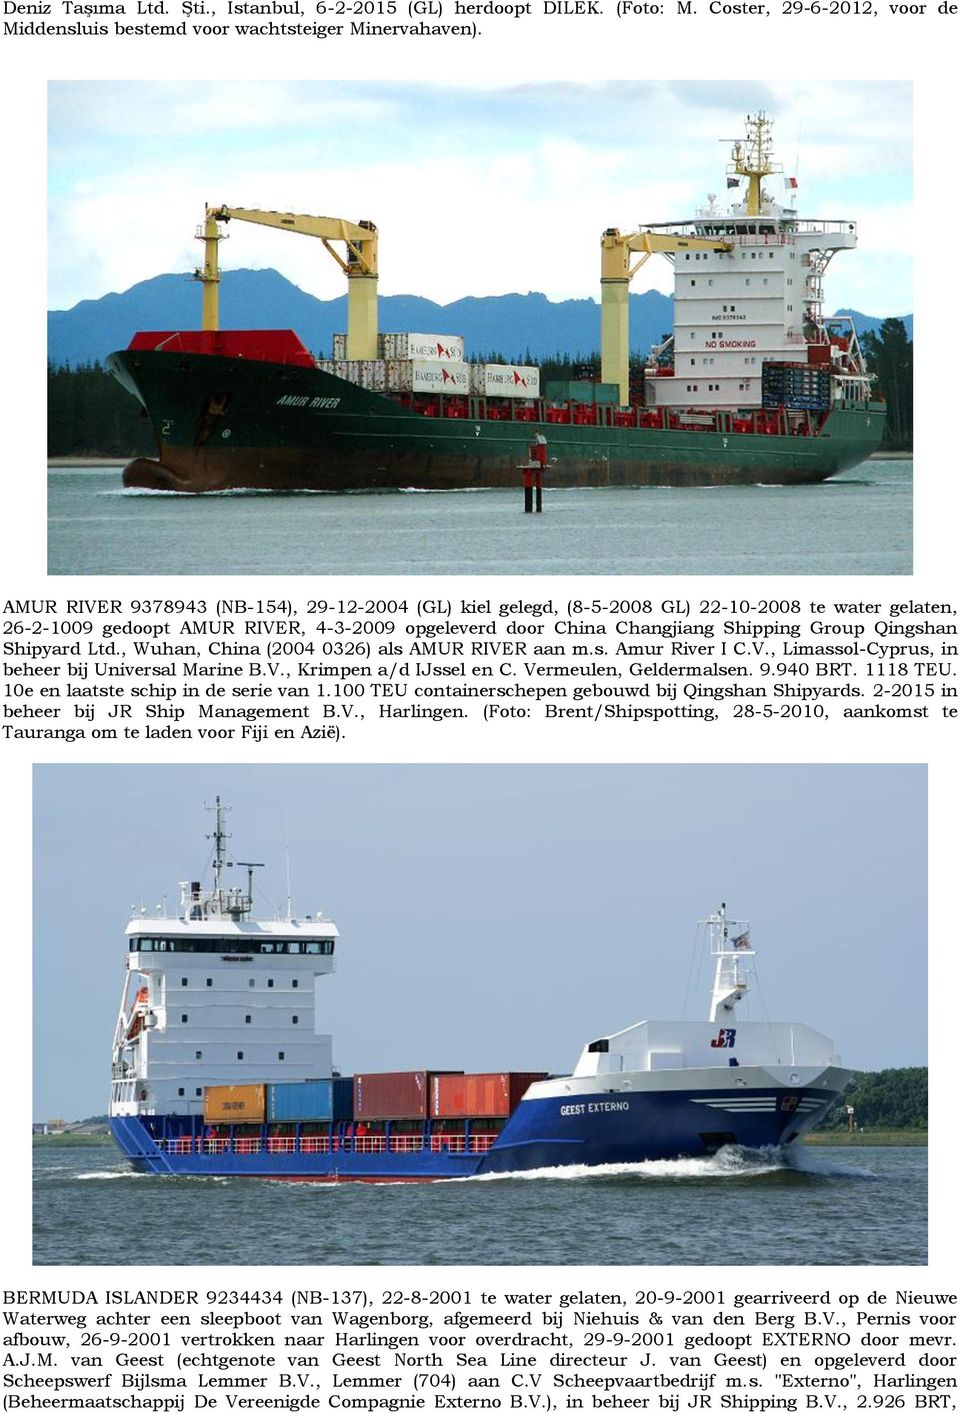 Shipyard Ltd., Wuhan, China (2004 0326) als AMUR RIVER aan m.s. Amur River I C.V., Limassol-Cyprus, in beheer bij Universal Marine B.V., Krimpen a/d IJssel en C. Vermeulen, Geldermalsen. 9.940 BRT.